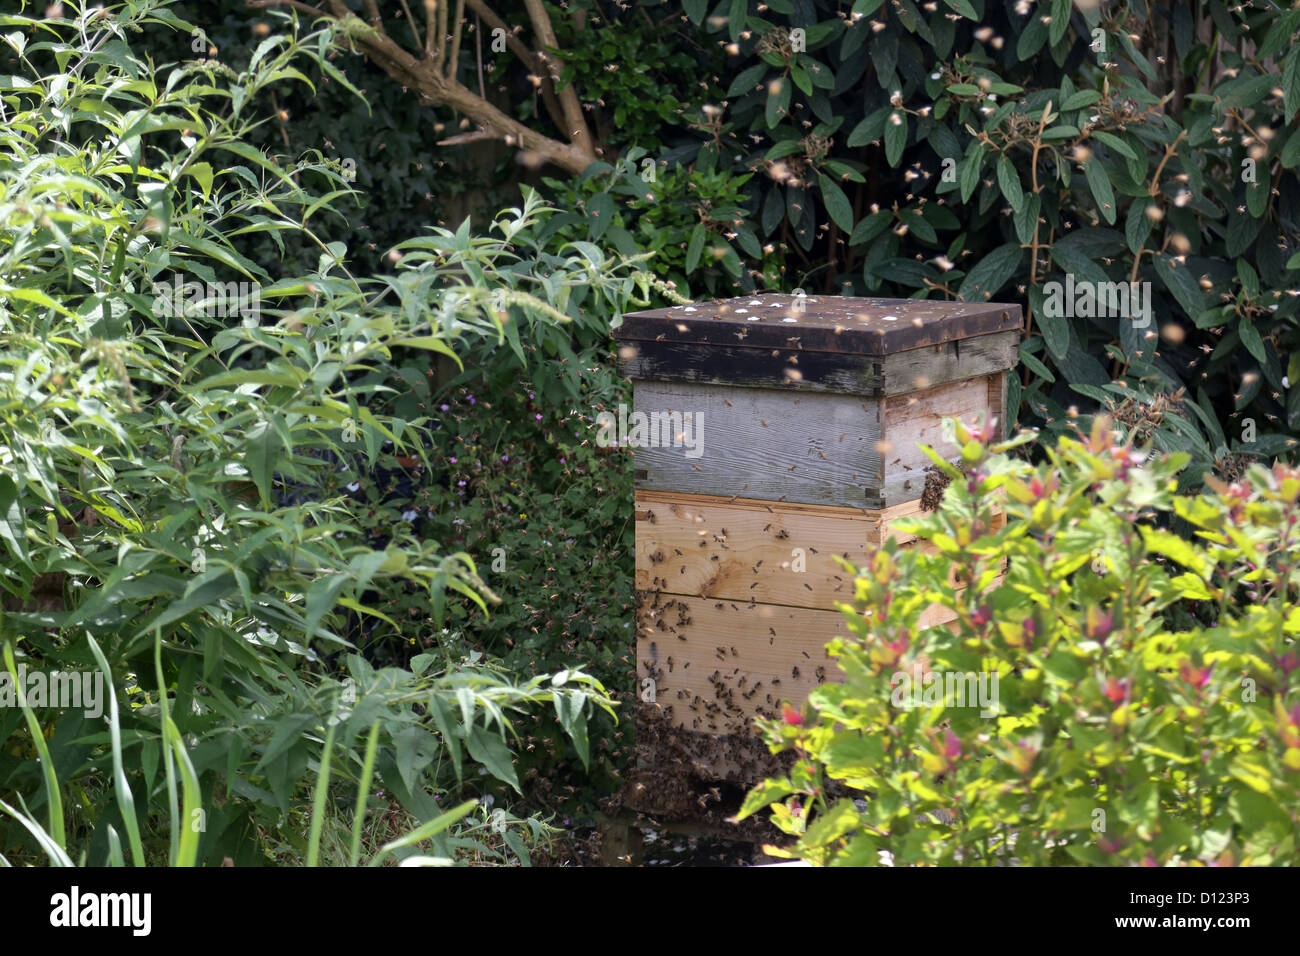 L'essaimage des abeilles dans une ruche de jardin Surrey England Banque D'Images